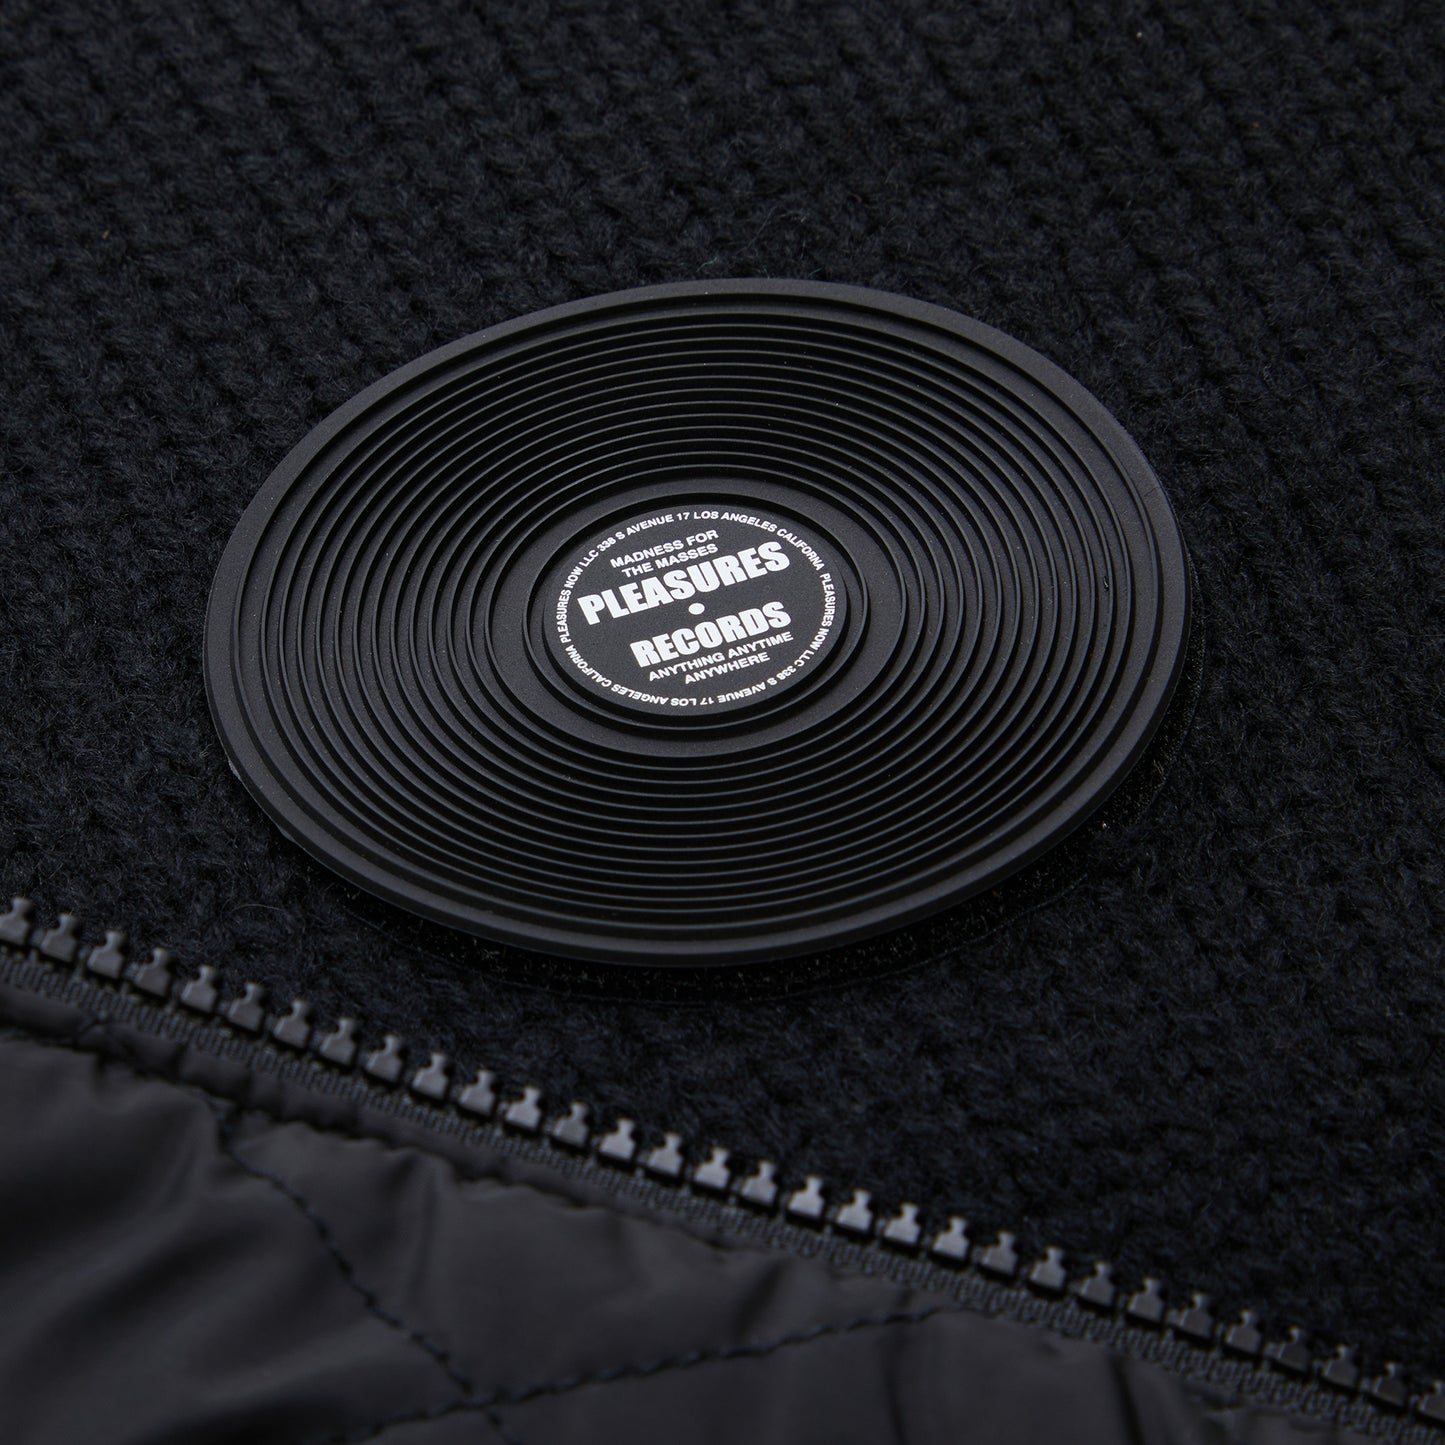 Pleasures Smoke Knitted Varsity Jacket (Black)